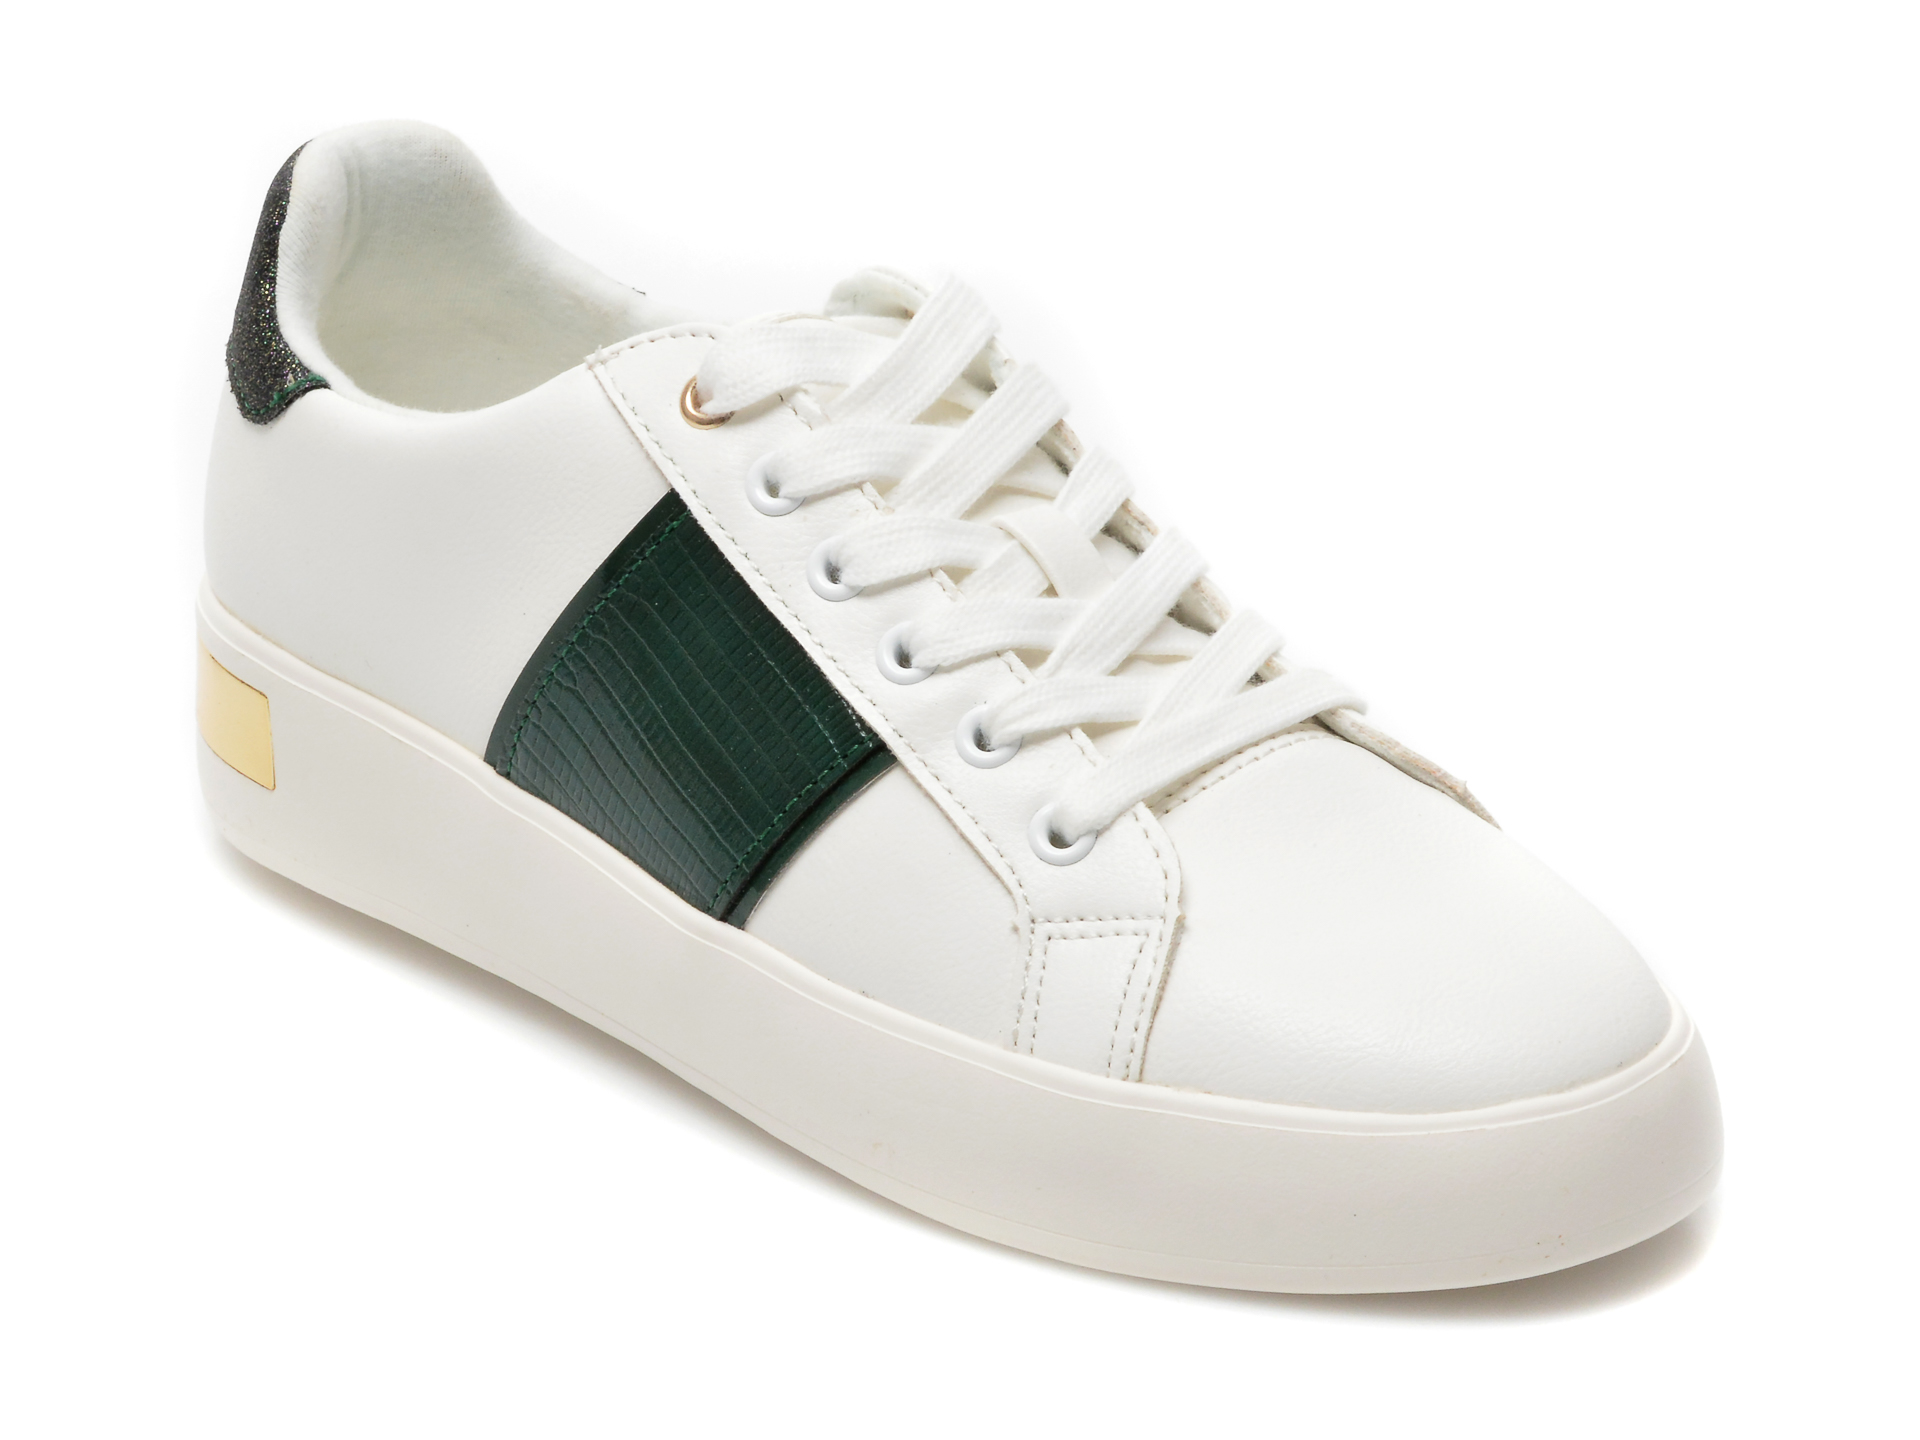 Pantofi sport ALDO albi, 13315363, din piele ecologica Aldo imagine reduceri